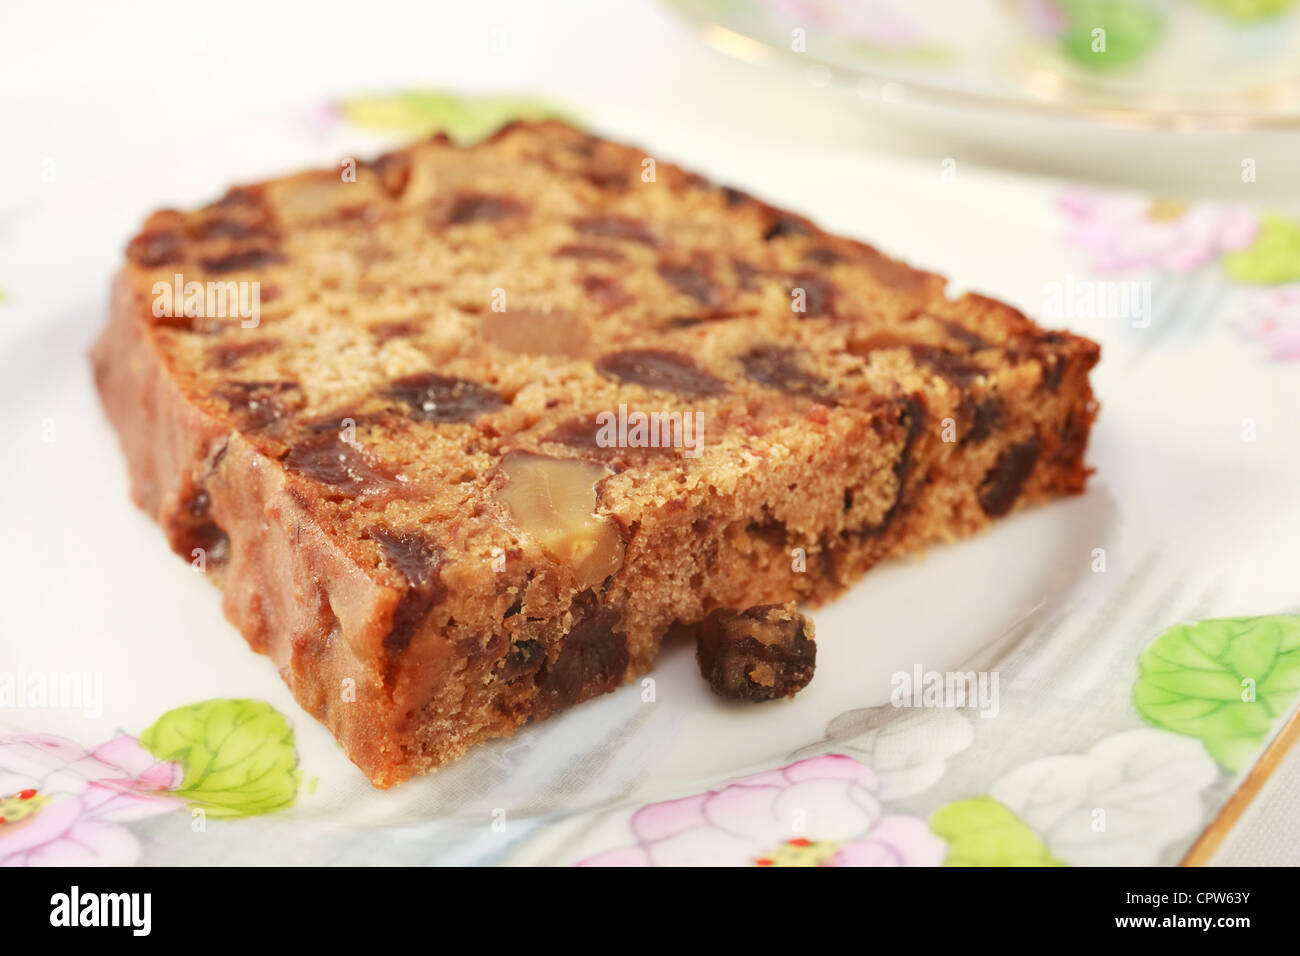 Ein Frucht-Kuchen mit Walnüssen enthält kein Fett, bekannt als irischer Tee Brot. Auf ziemlich floral Geschirr für den Nachmittagstee. Stockfoto